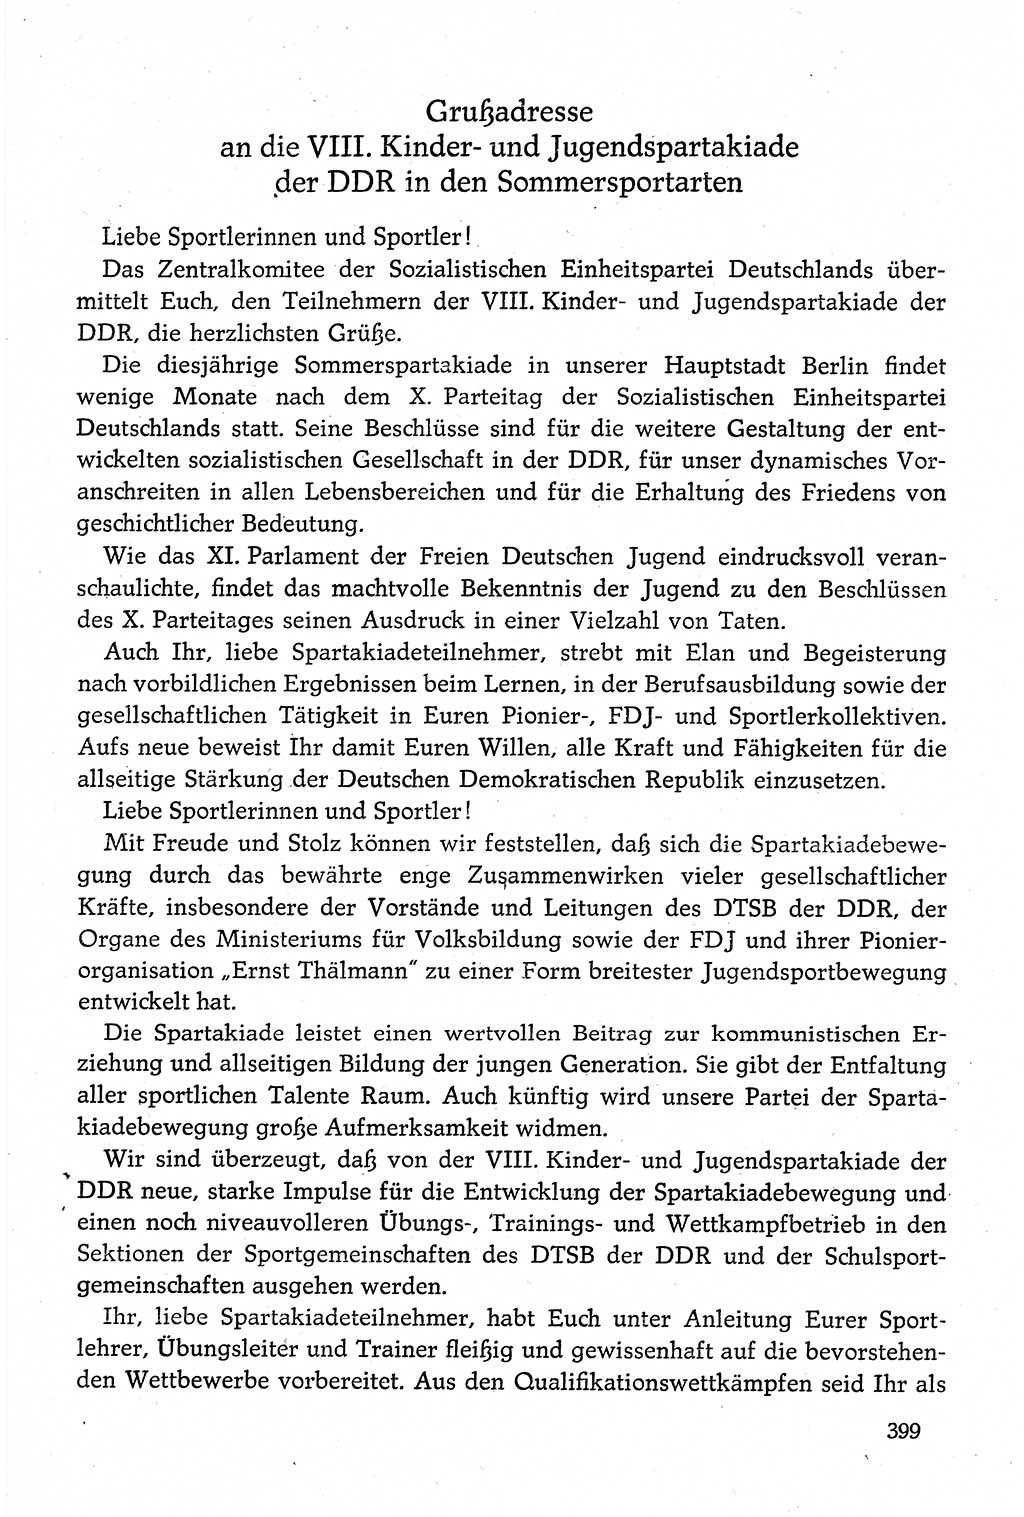 Dokumente der Sozialistischen Einheitspartei Deutschlands (SED) [Deutsche Demokratische Republik (DDR)] 1980-1981, Seite 399 (Dok. SED DDR 1980-1981, S. 399)